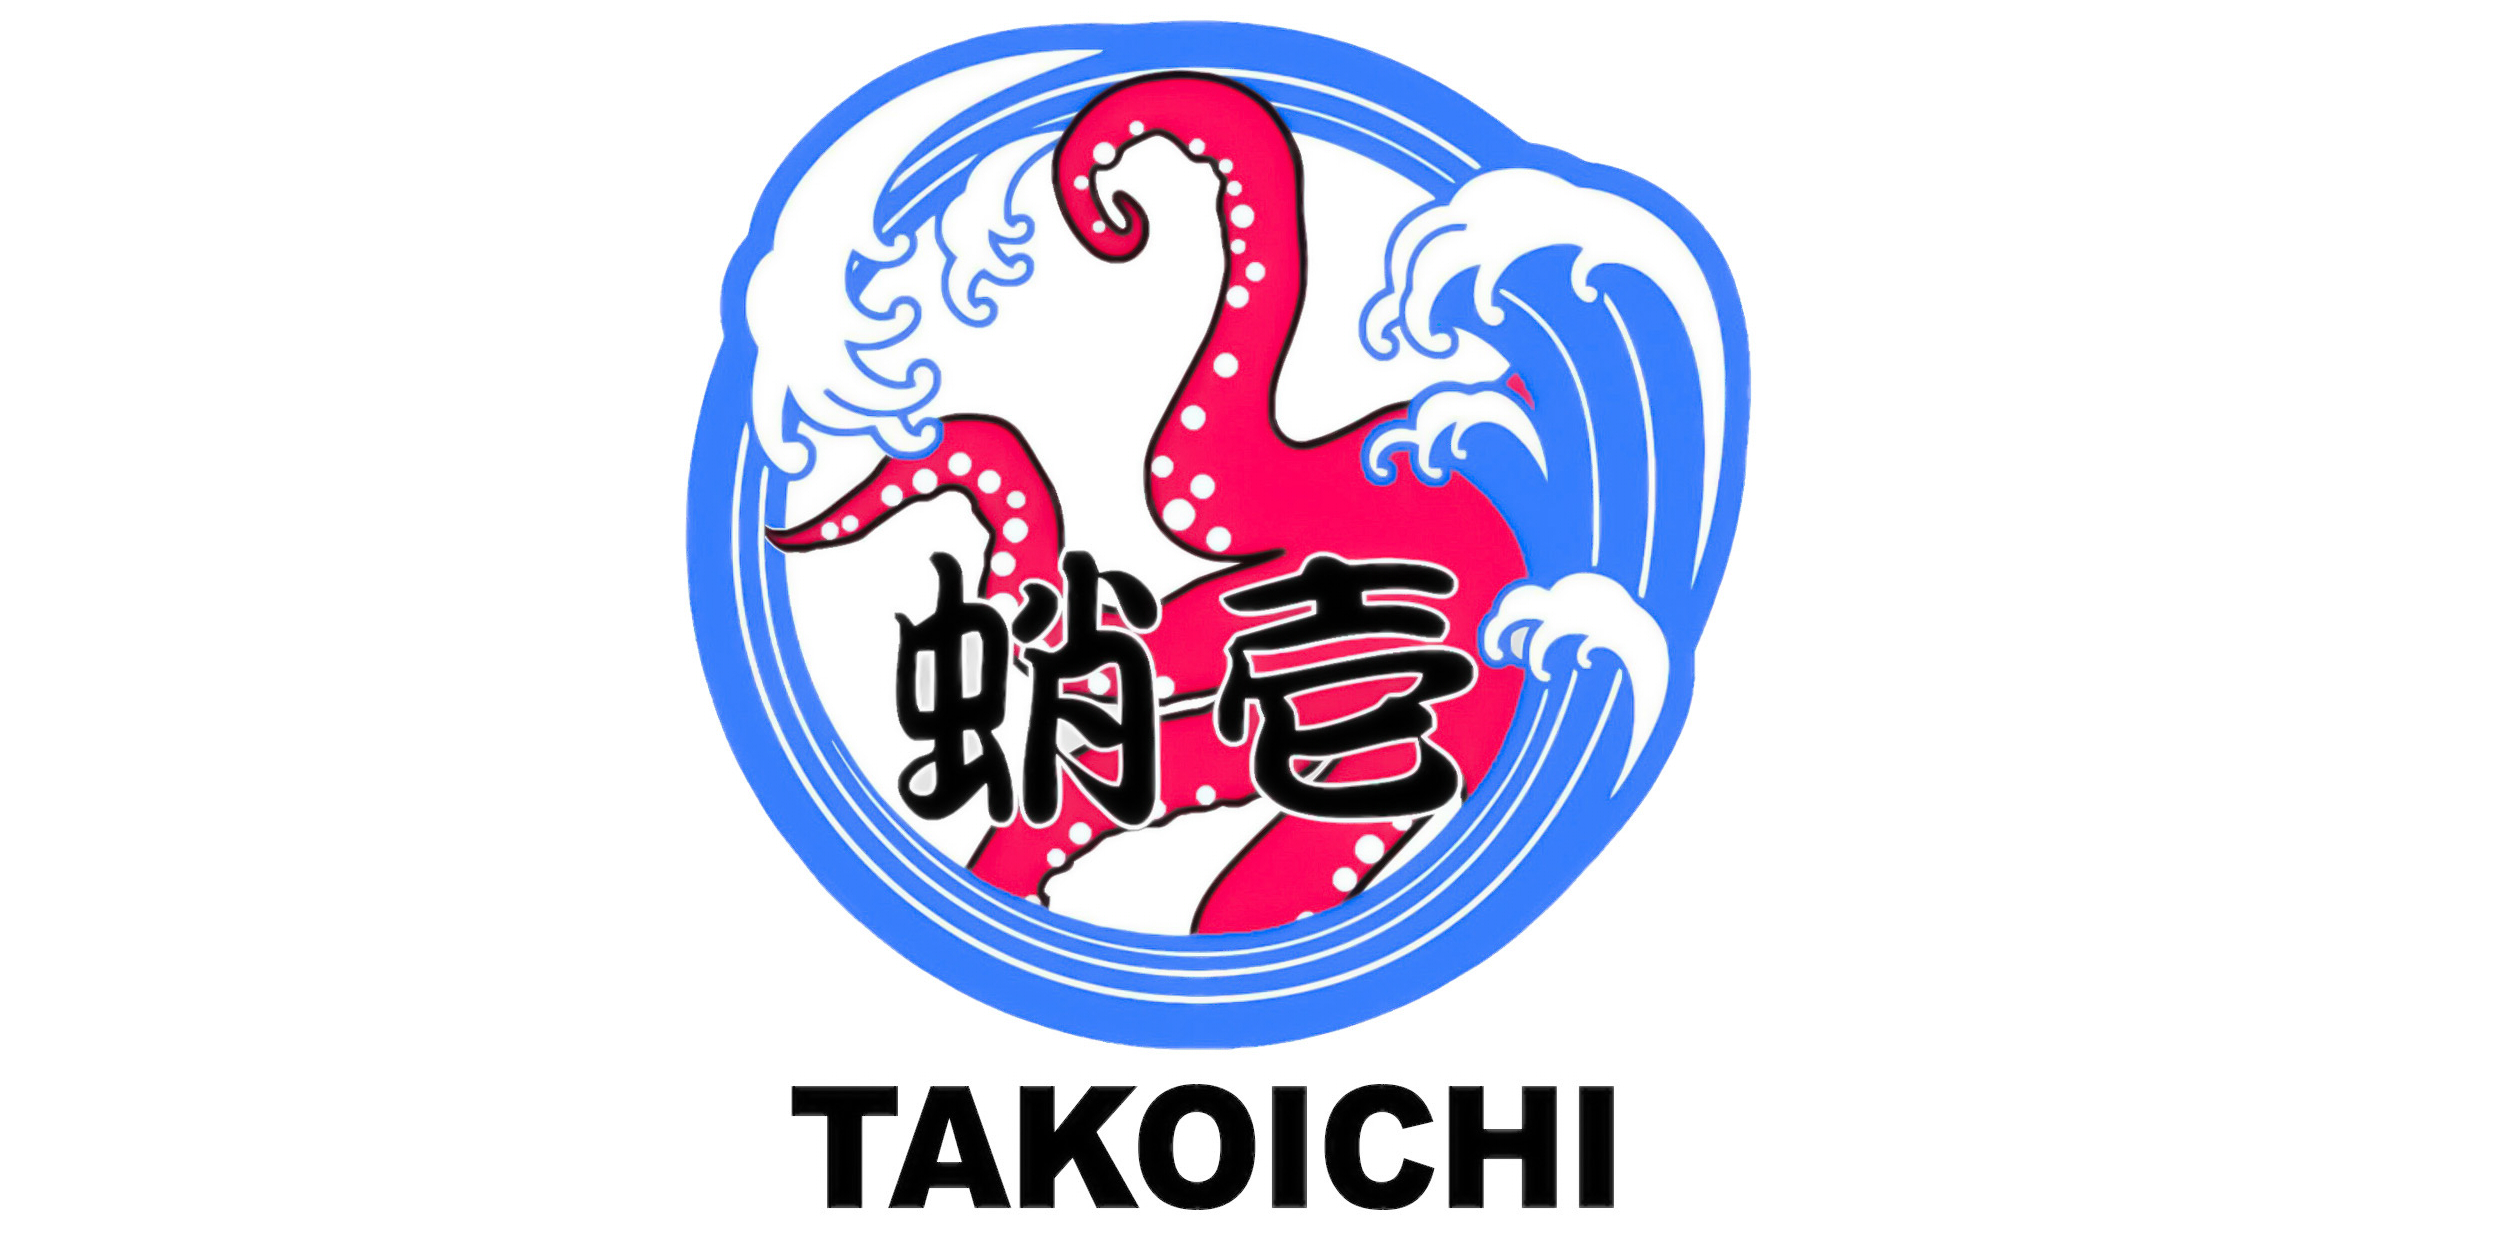 Takoichi